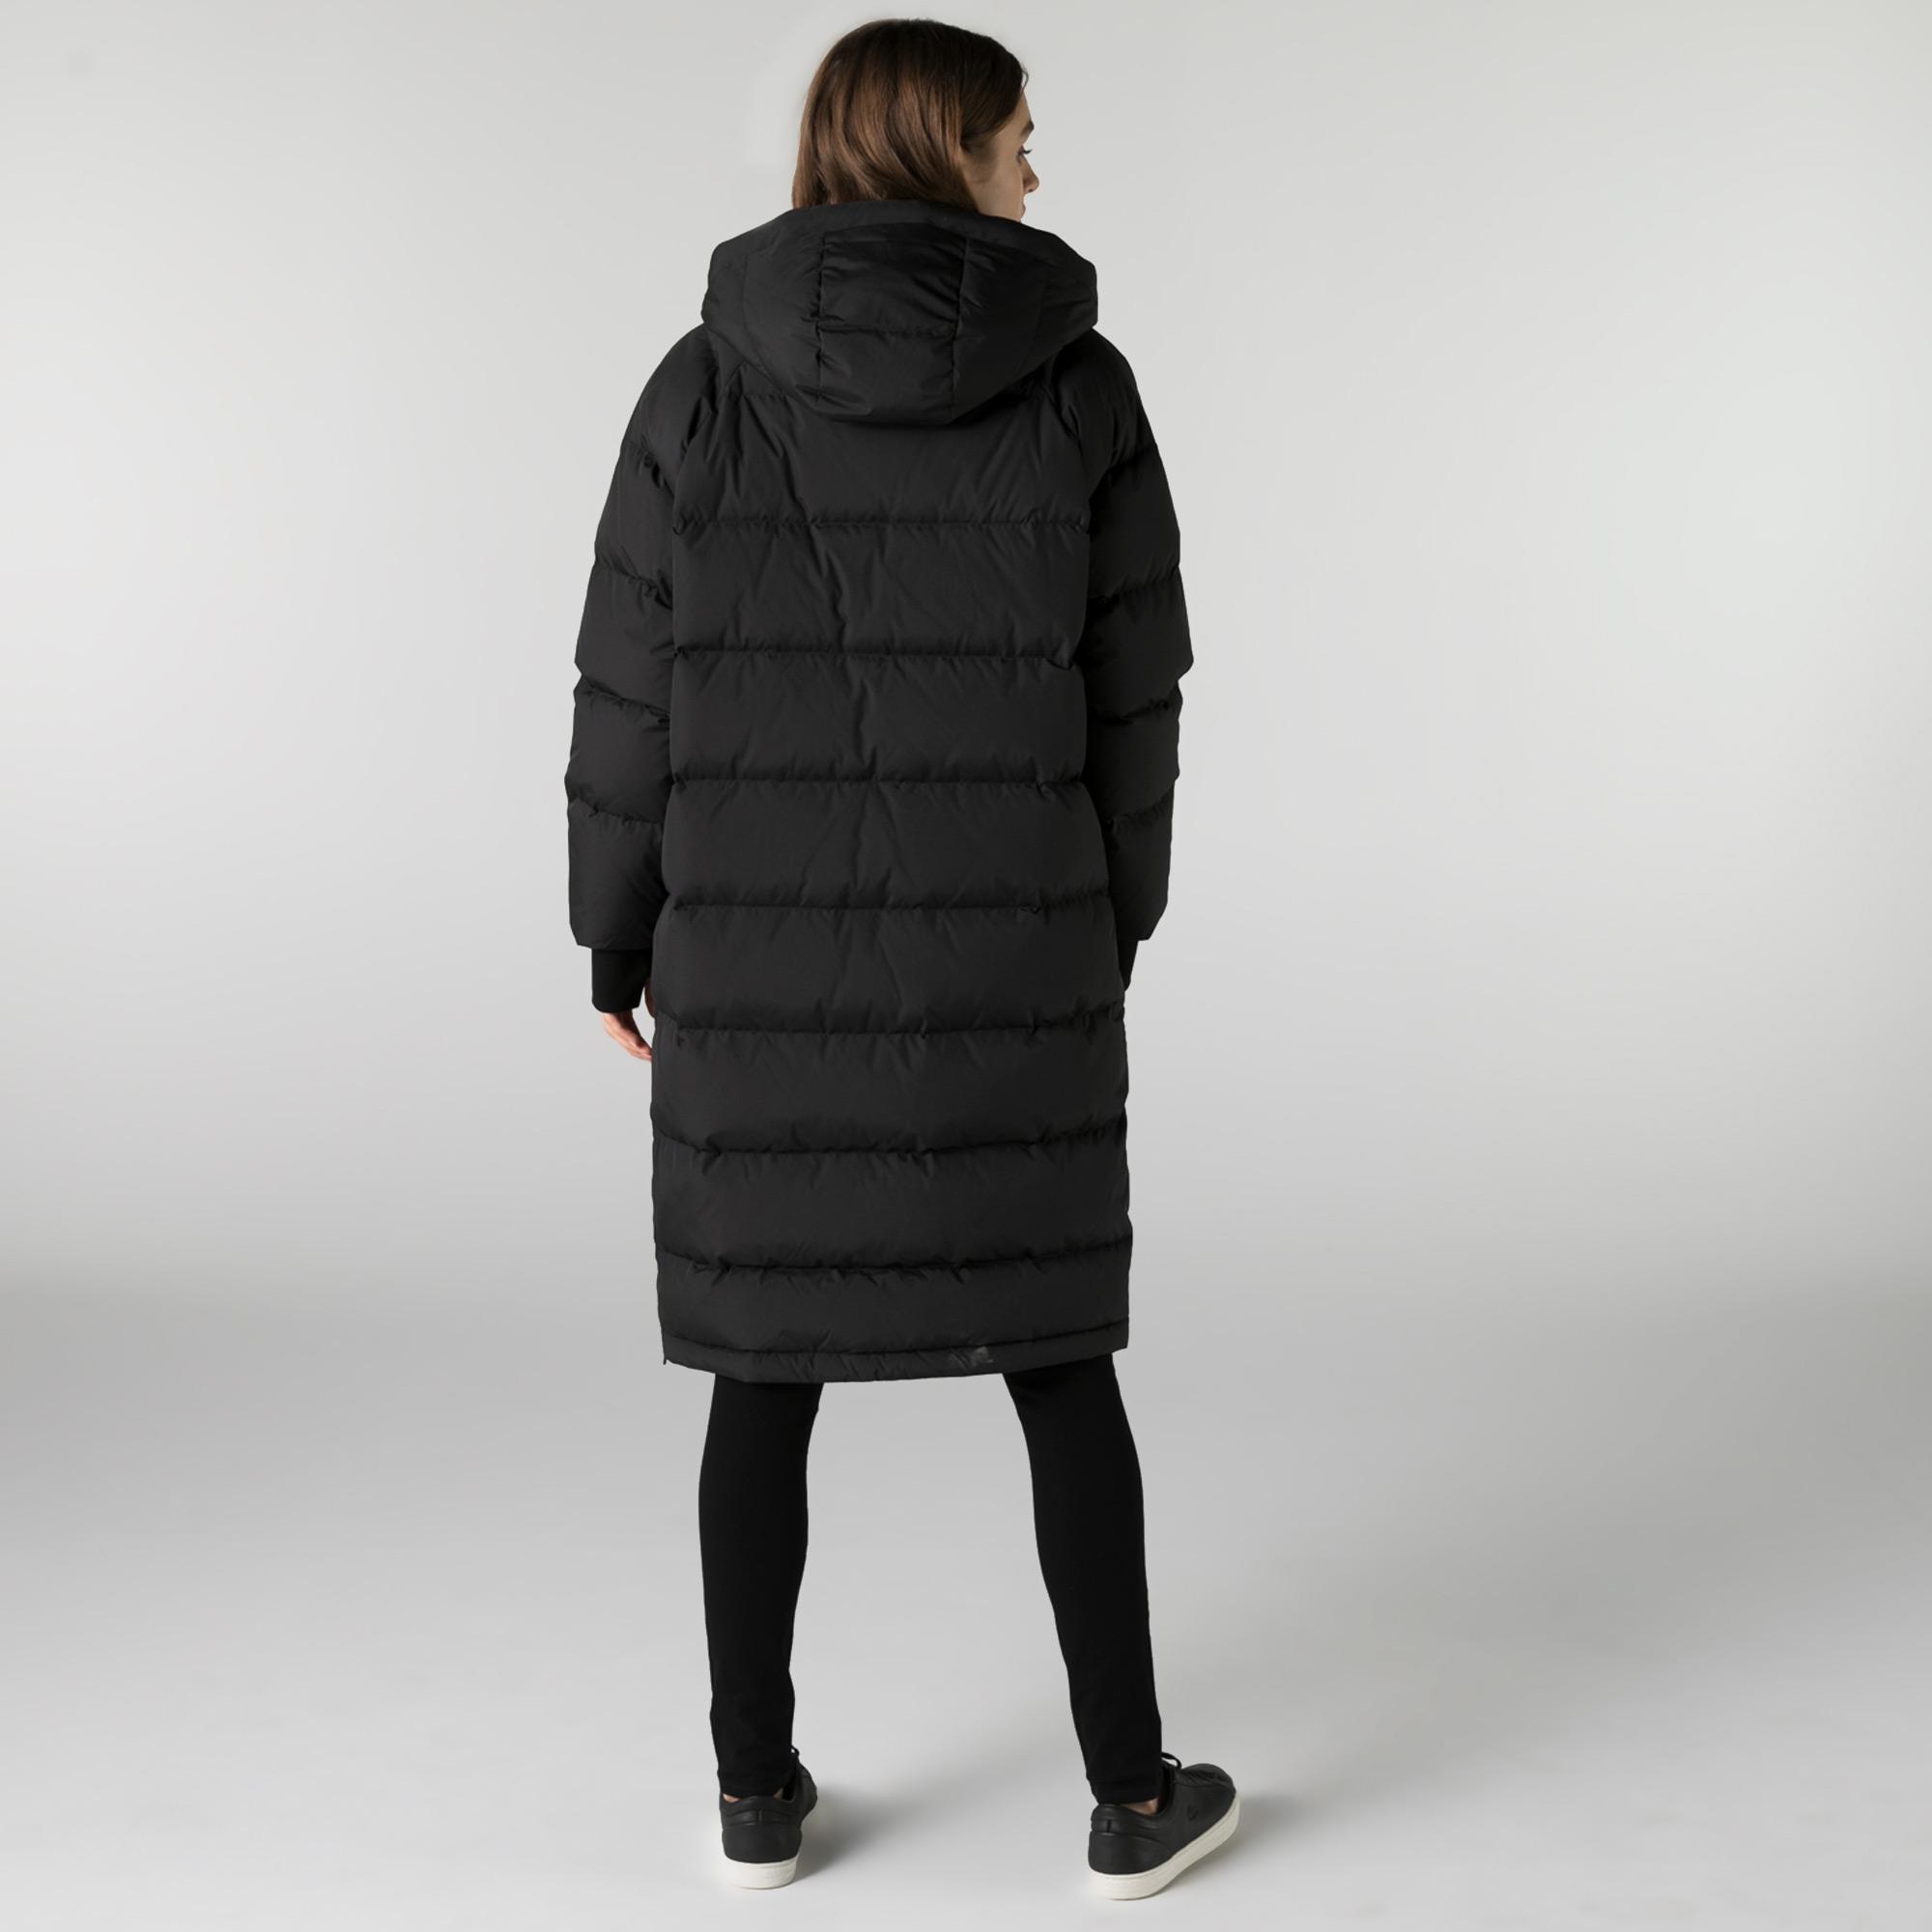 Lacoste Women's Jacket BF2217 | Lacoste